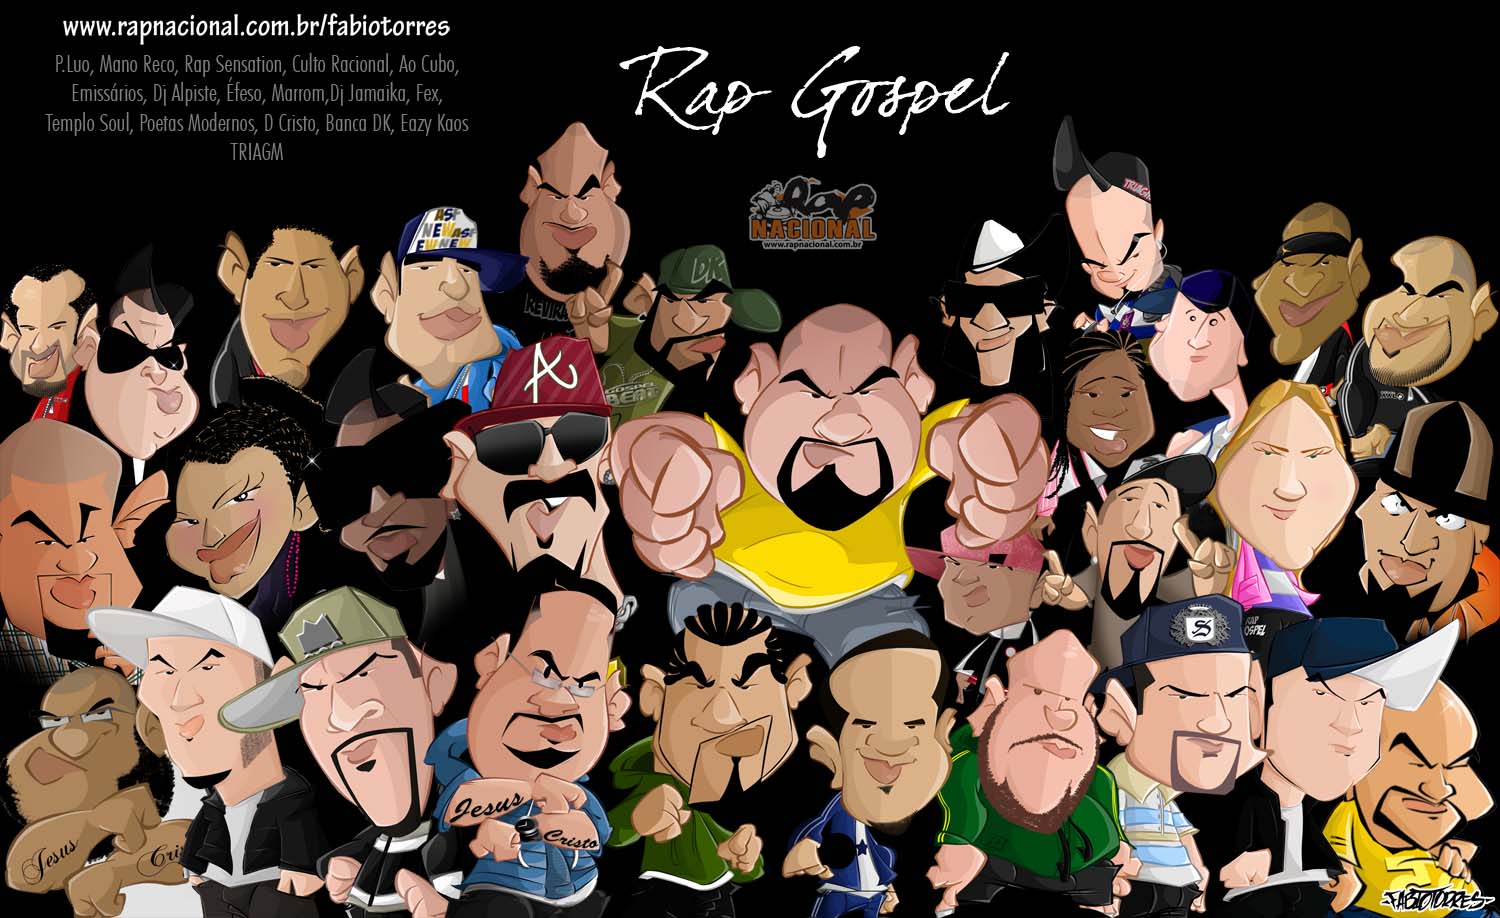 http://4.bp.blogspot.com/-apTYg_X_nm0/TWZwA_jTguI/AAAAAAAADOk/V4hxjCQWl-Q/s1600/wallpaper_rap_gospel+copy.jpg